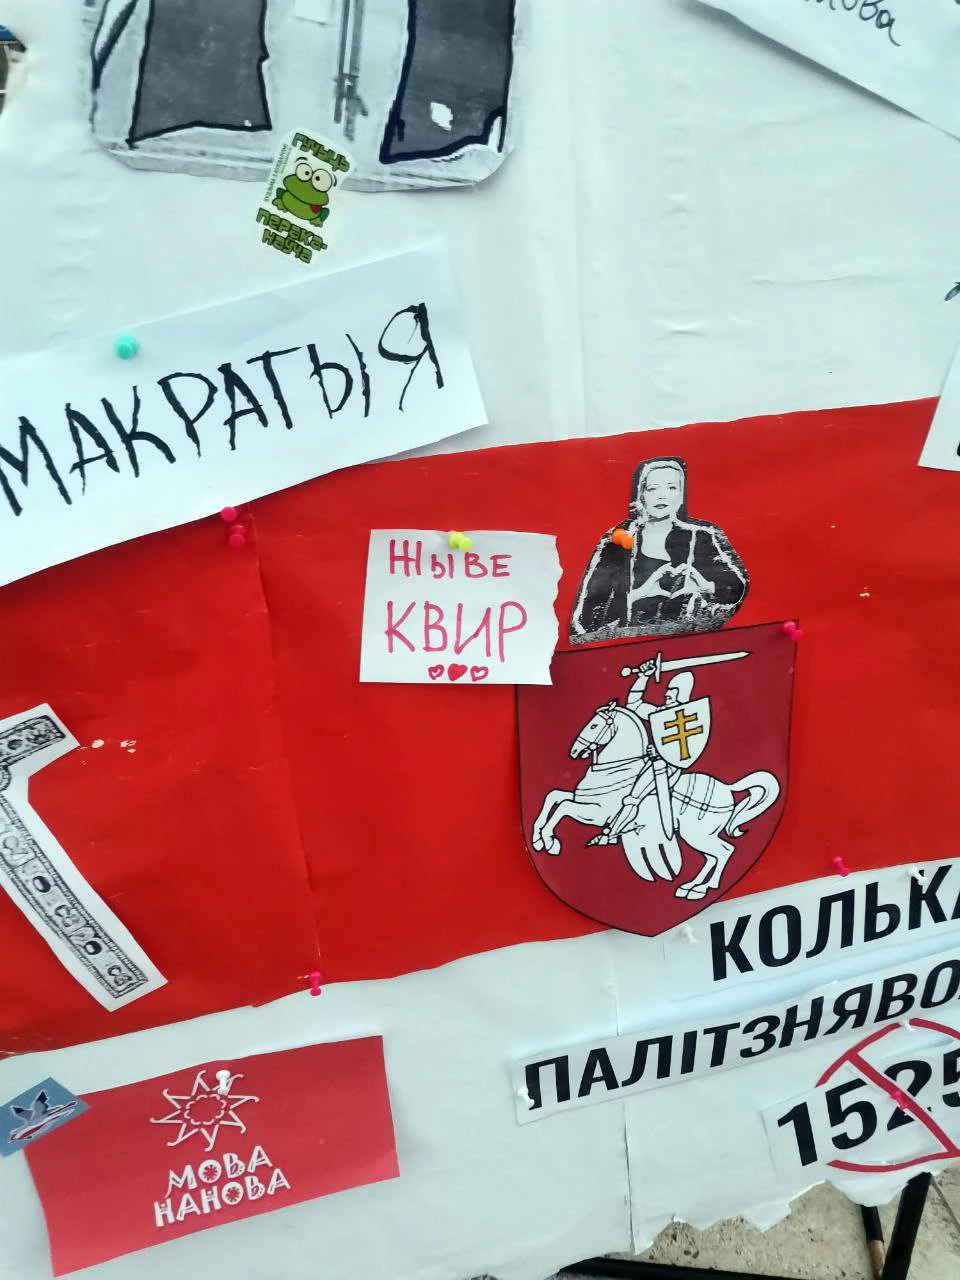 О беларуской толерантности, борьбе властей с ЛГБТК+ и правах каждого